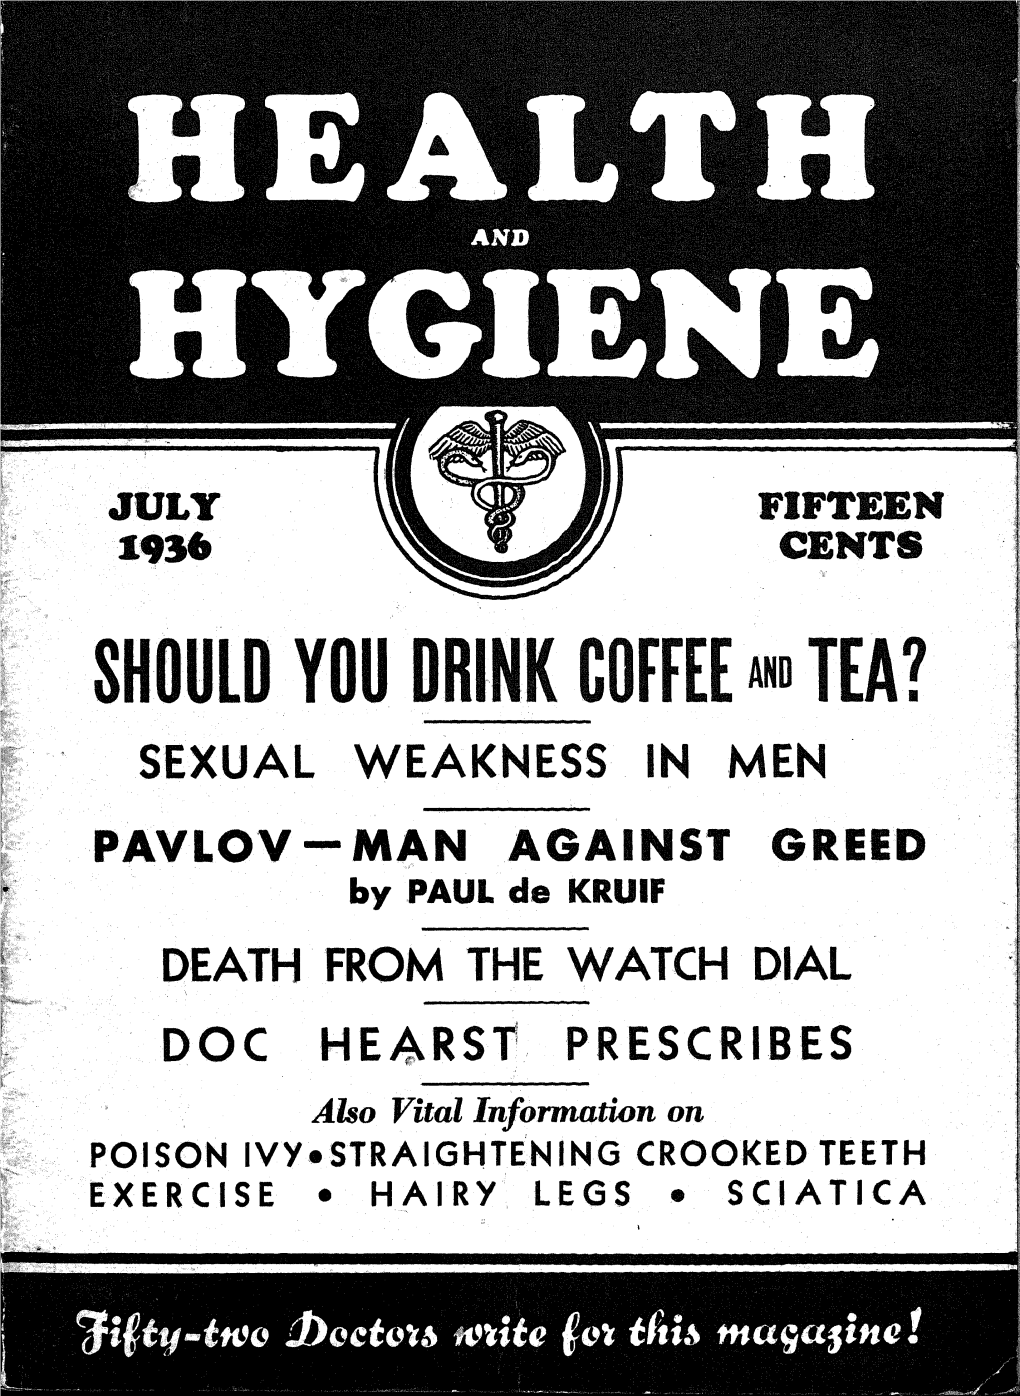 Volume 4, Number 1, July 1936